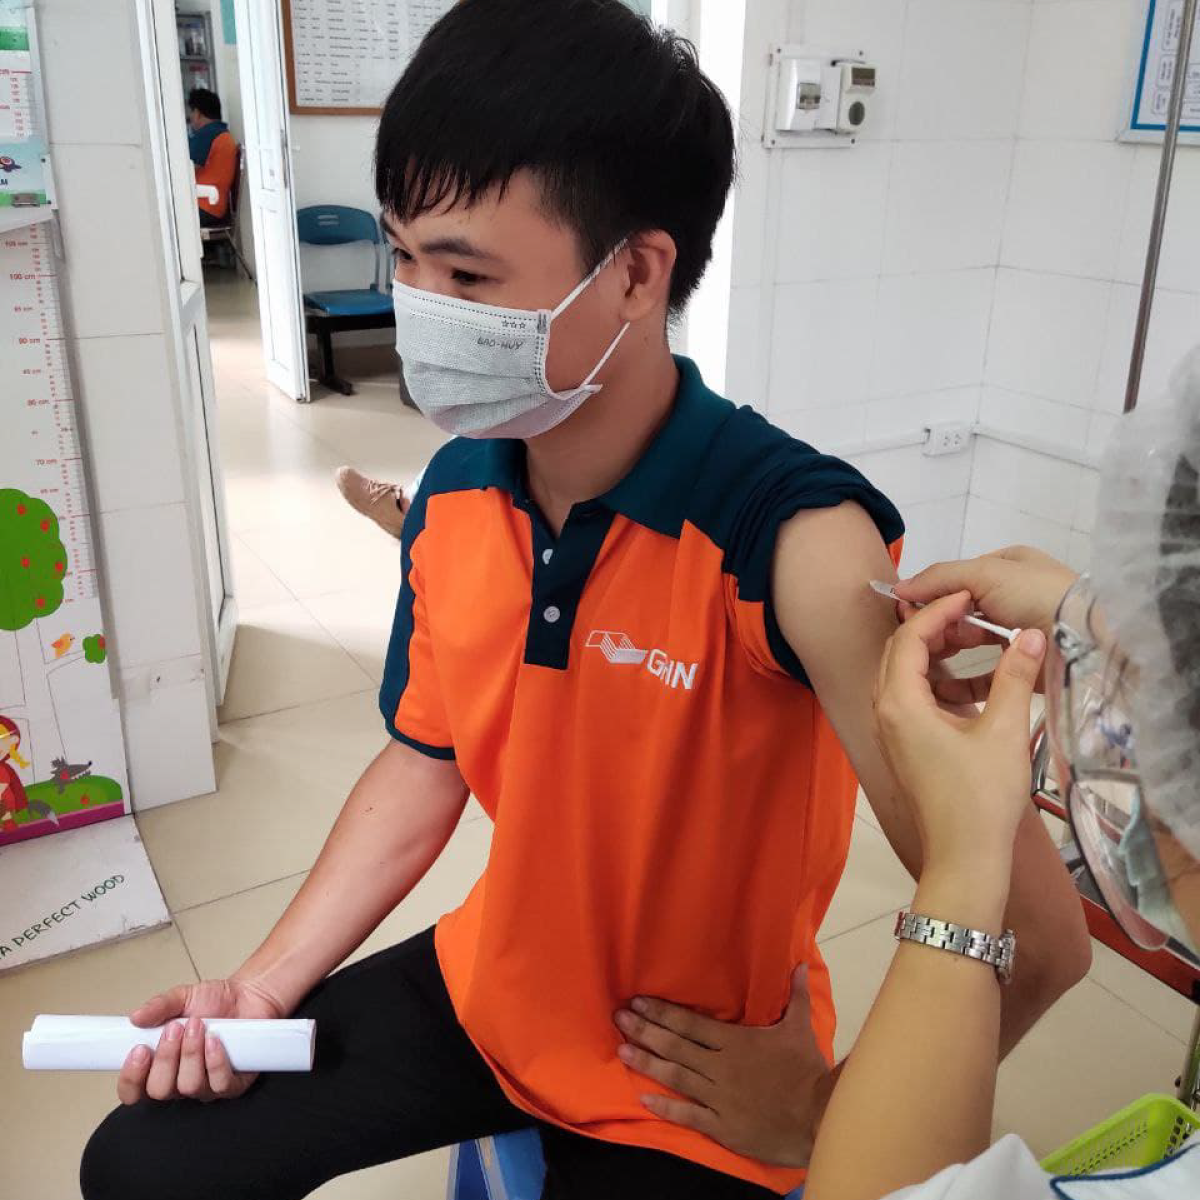 GHN vẫn tiếp tục duy trì hoạt động giao nhận bình thường ở Hà Nội và Hồ Chí Minh nhờ nỗ lực tiêm chủng cho đội ngũ nhân sự